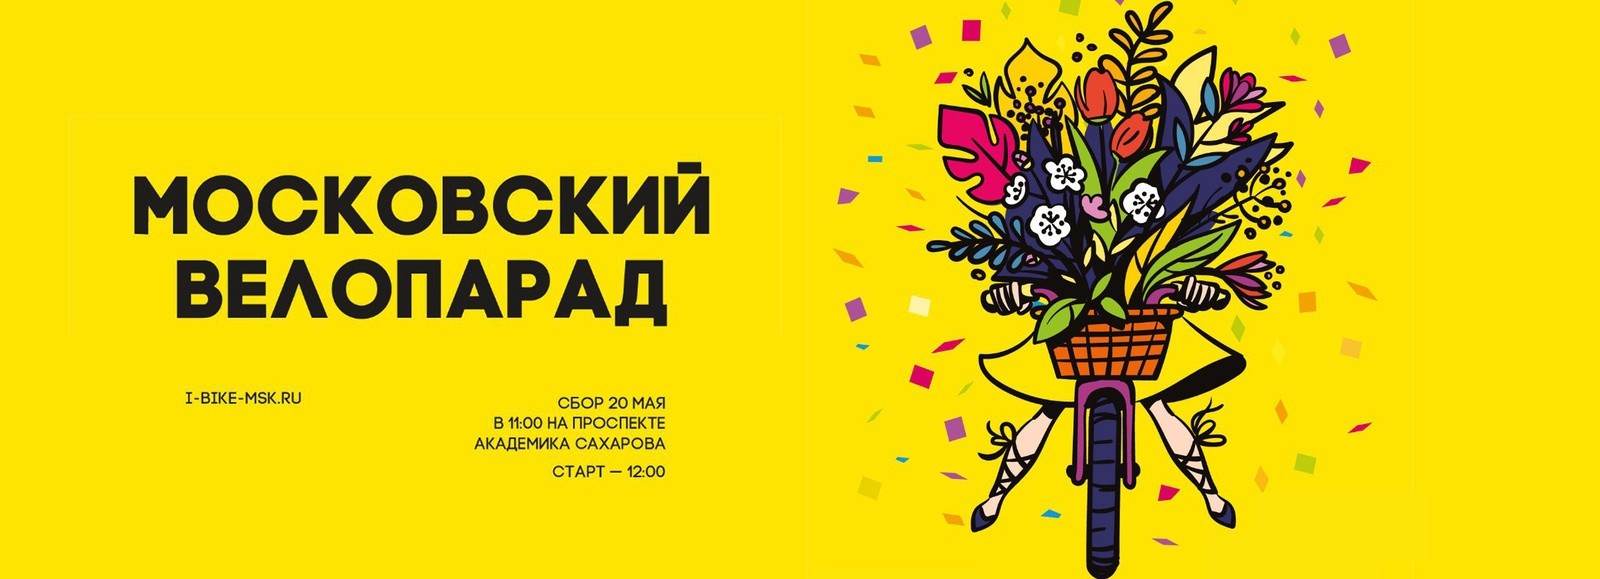 Приглашаем всех на Московский велопарад!